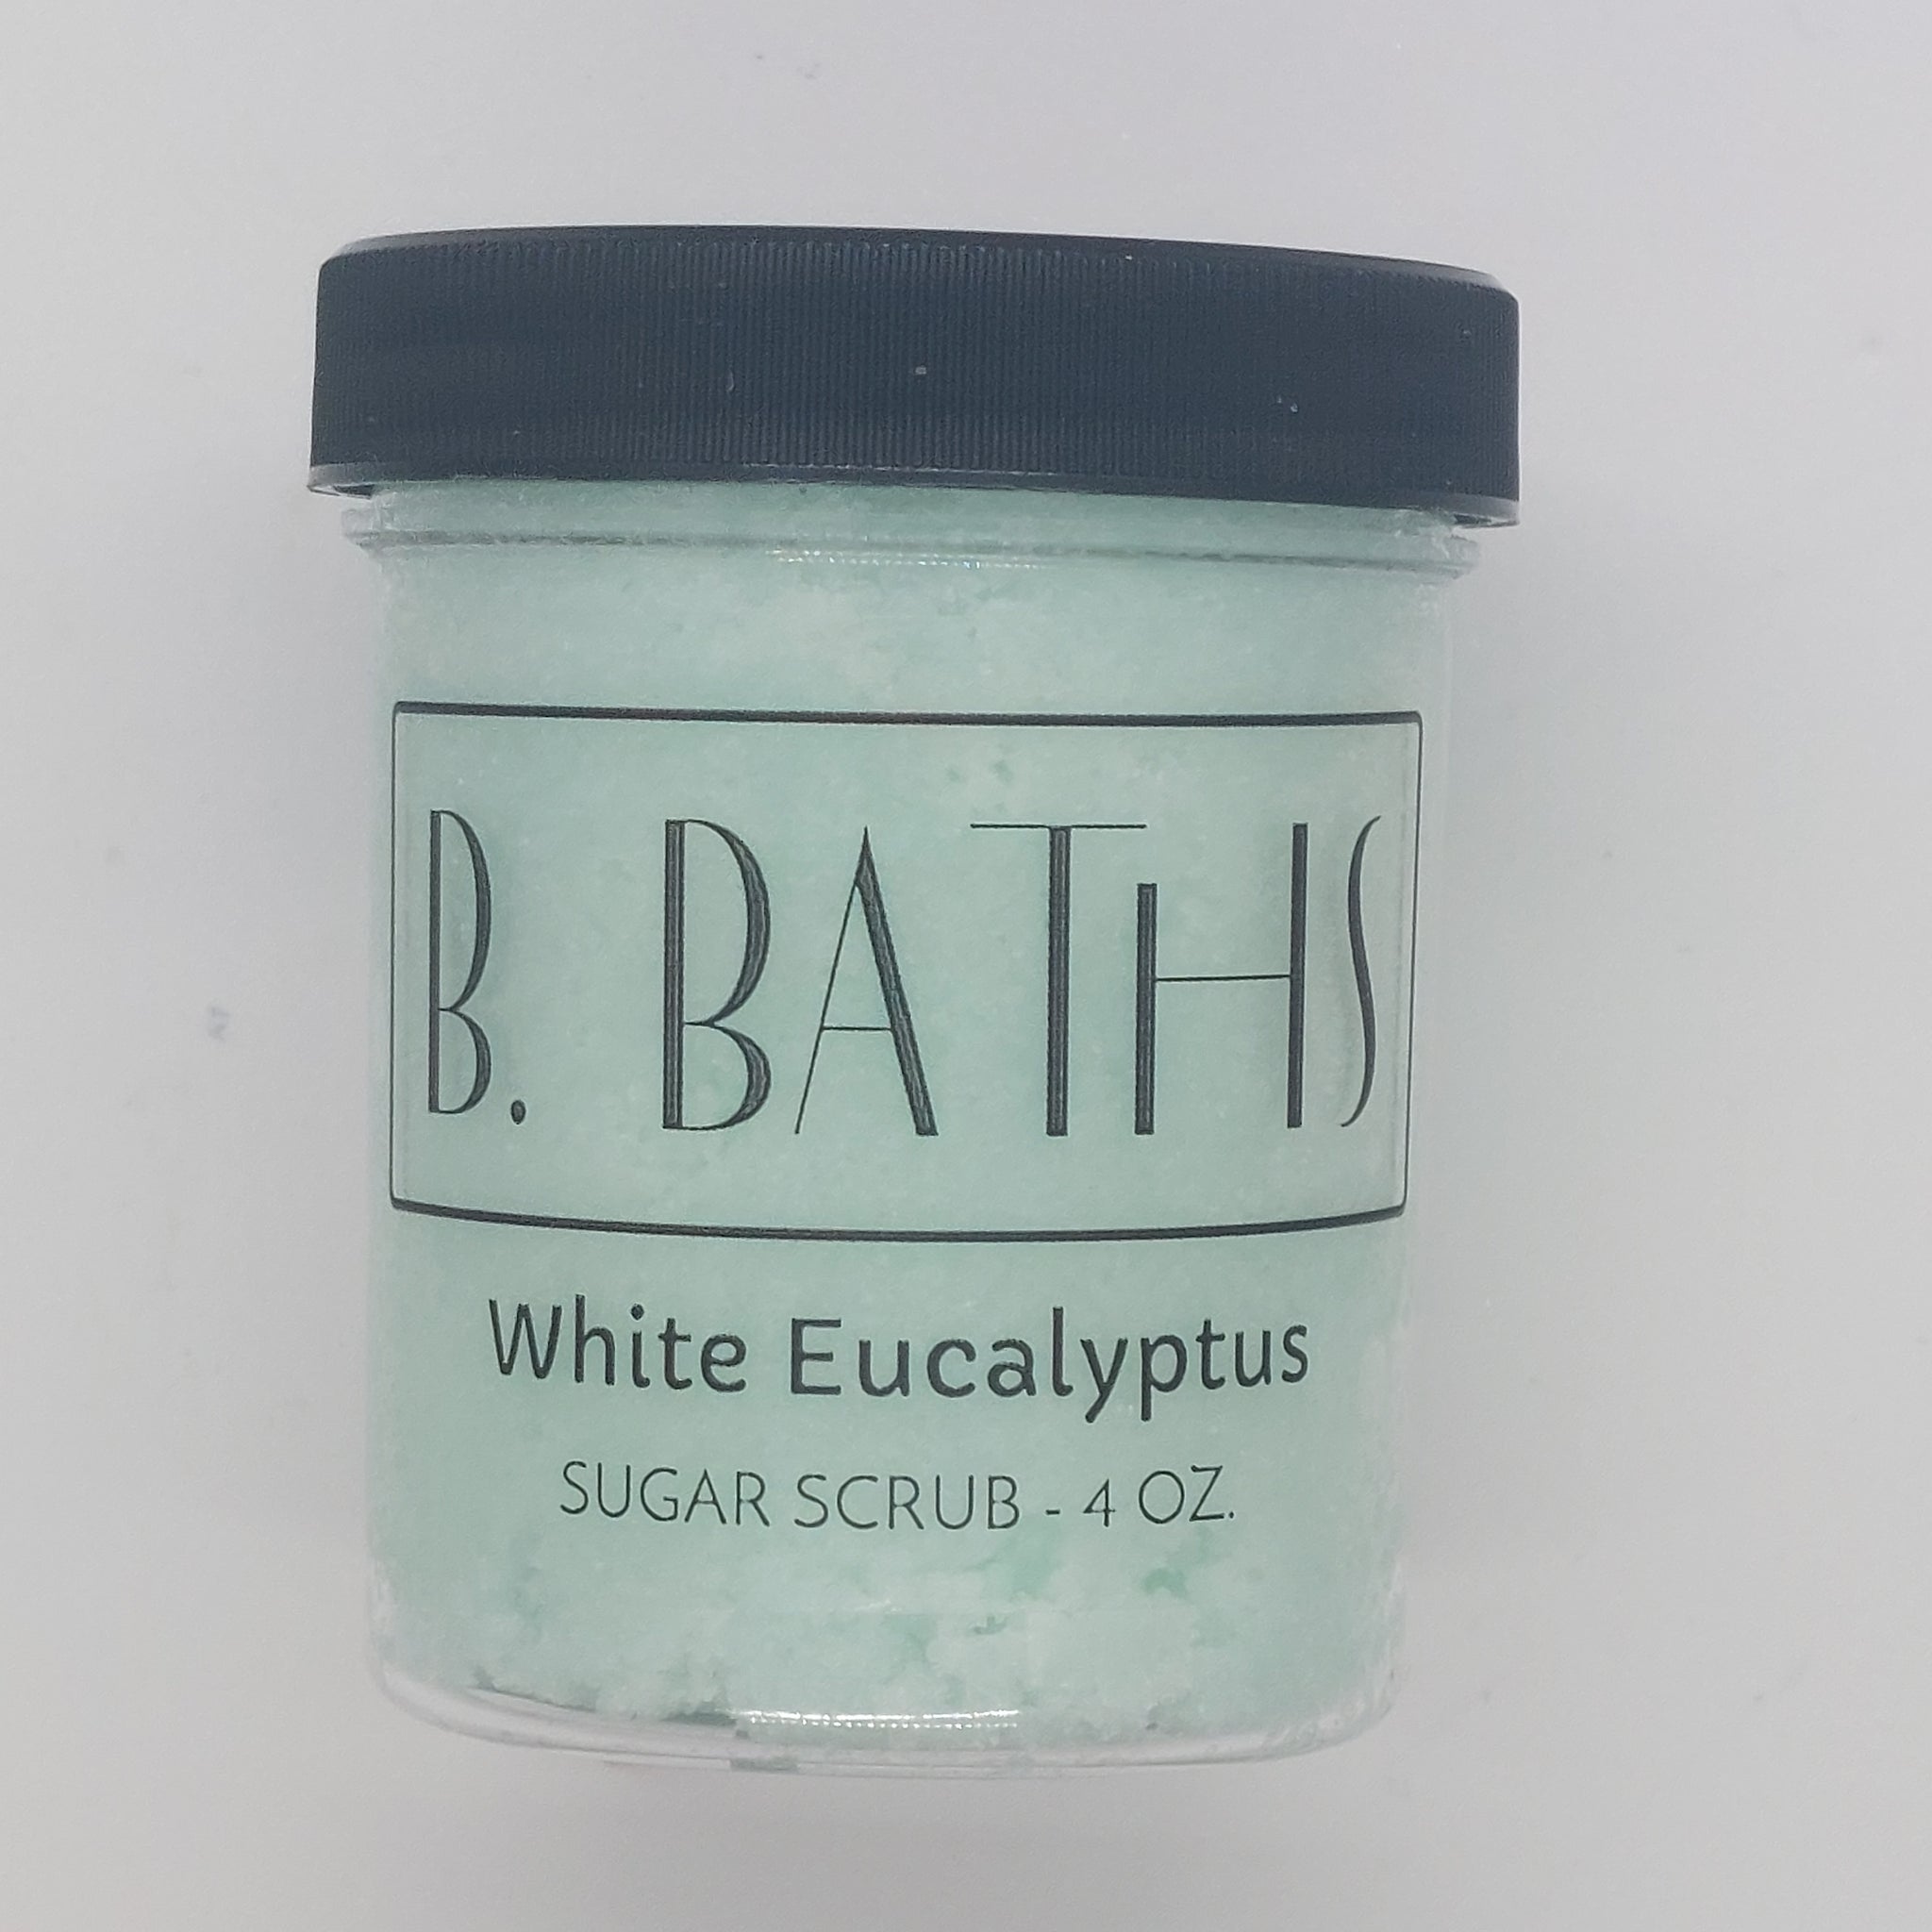 White Eucalyptus Sugar Scrub